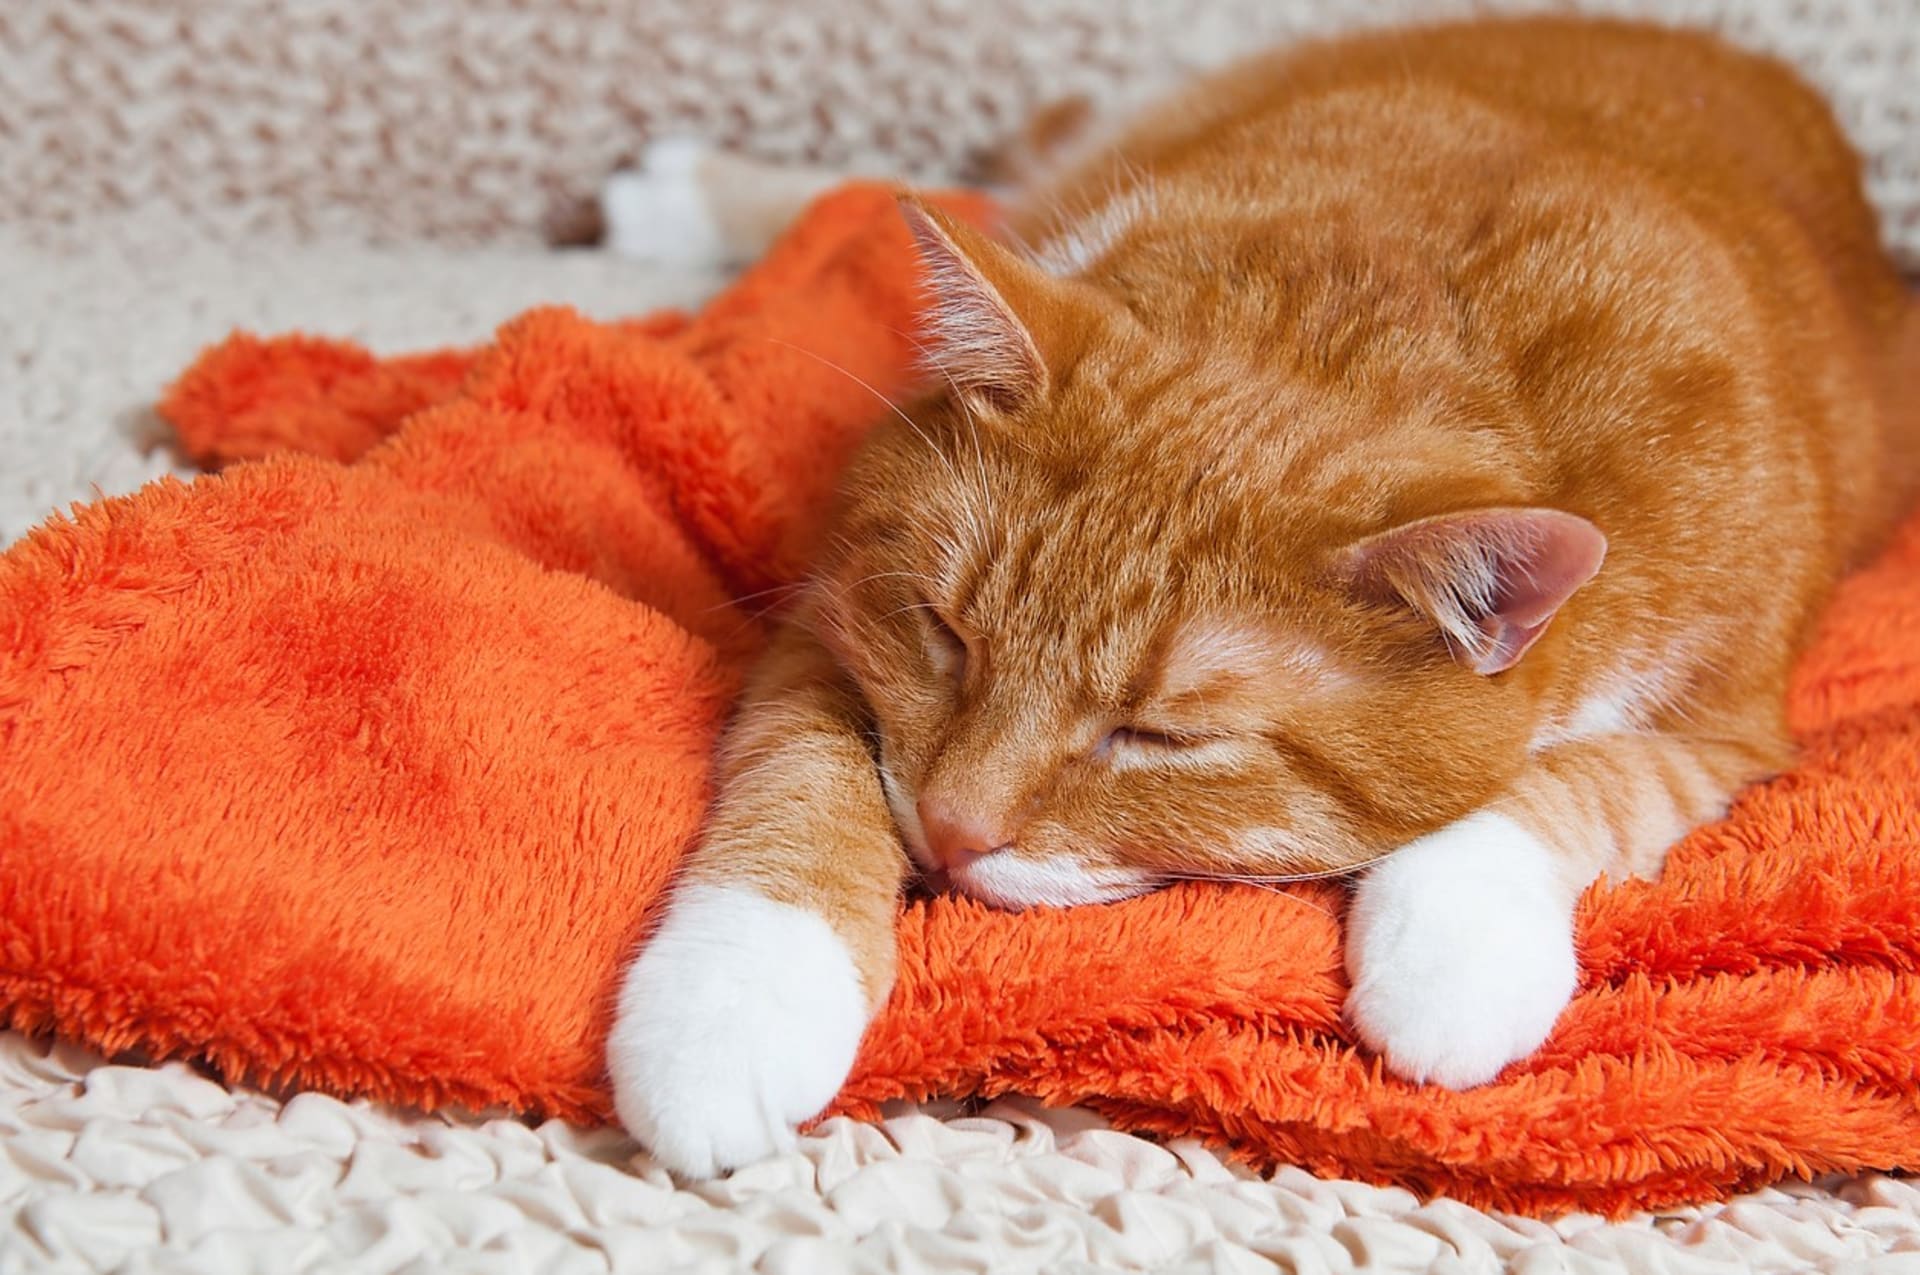 Občasné zvracení u kočky je celkem běžná záležitost, čistí si tím žaludek od nestrávených granulí nebo spolknutých chlupů